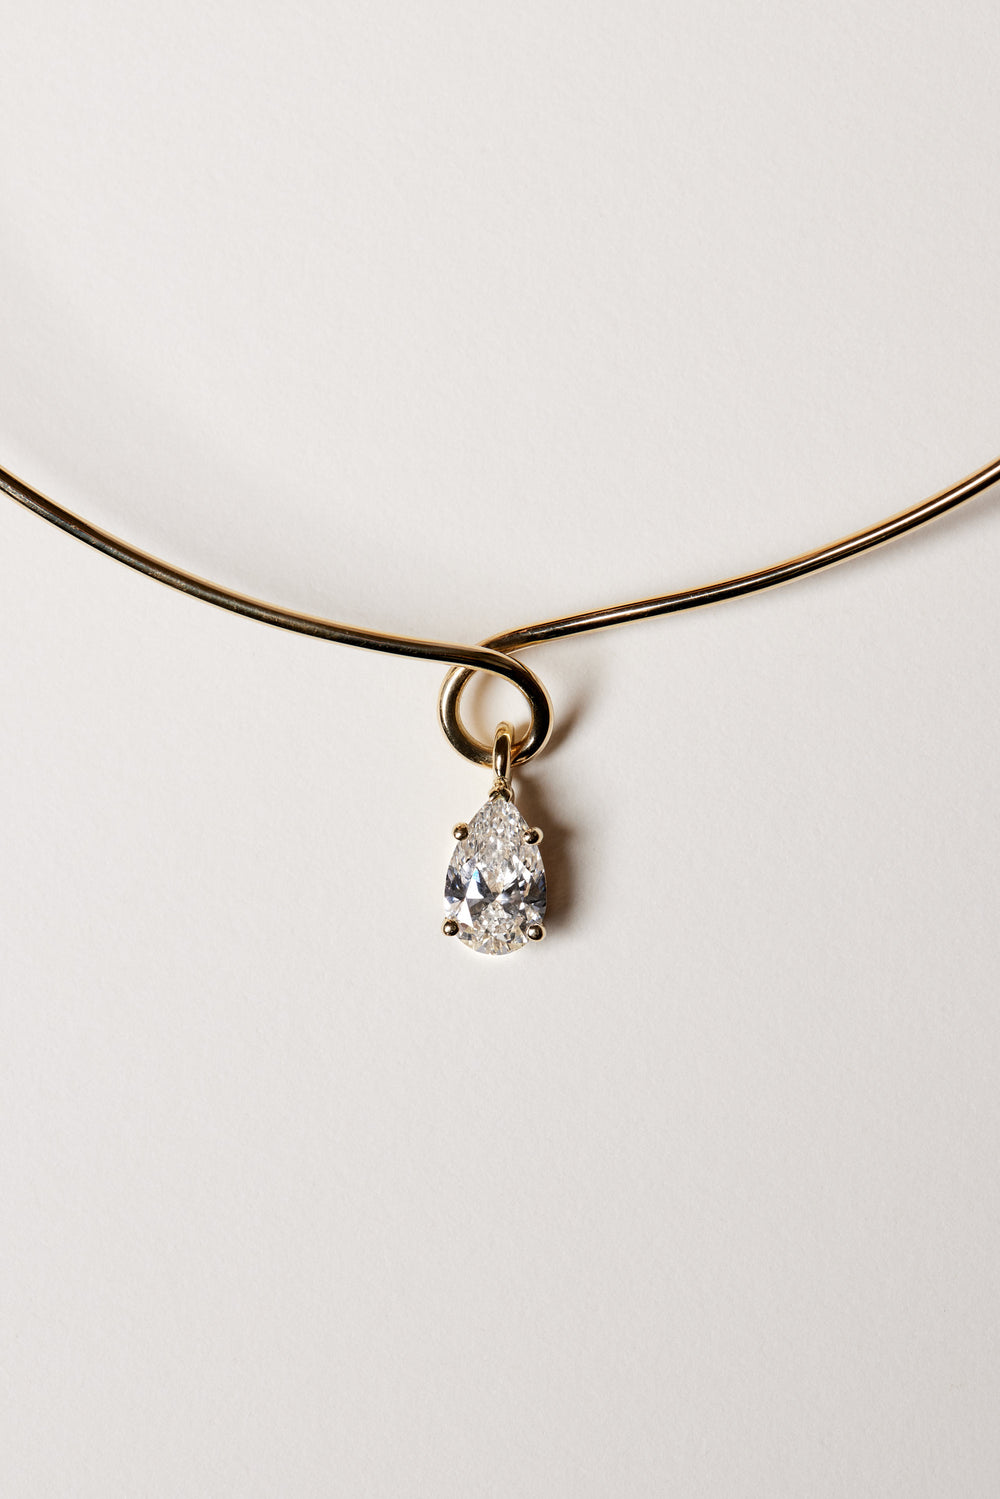 Omega Loop Necklace with Diamond | 18K White Gold| Natasha Schweitzer